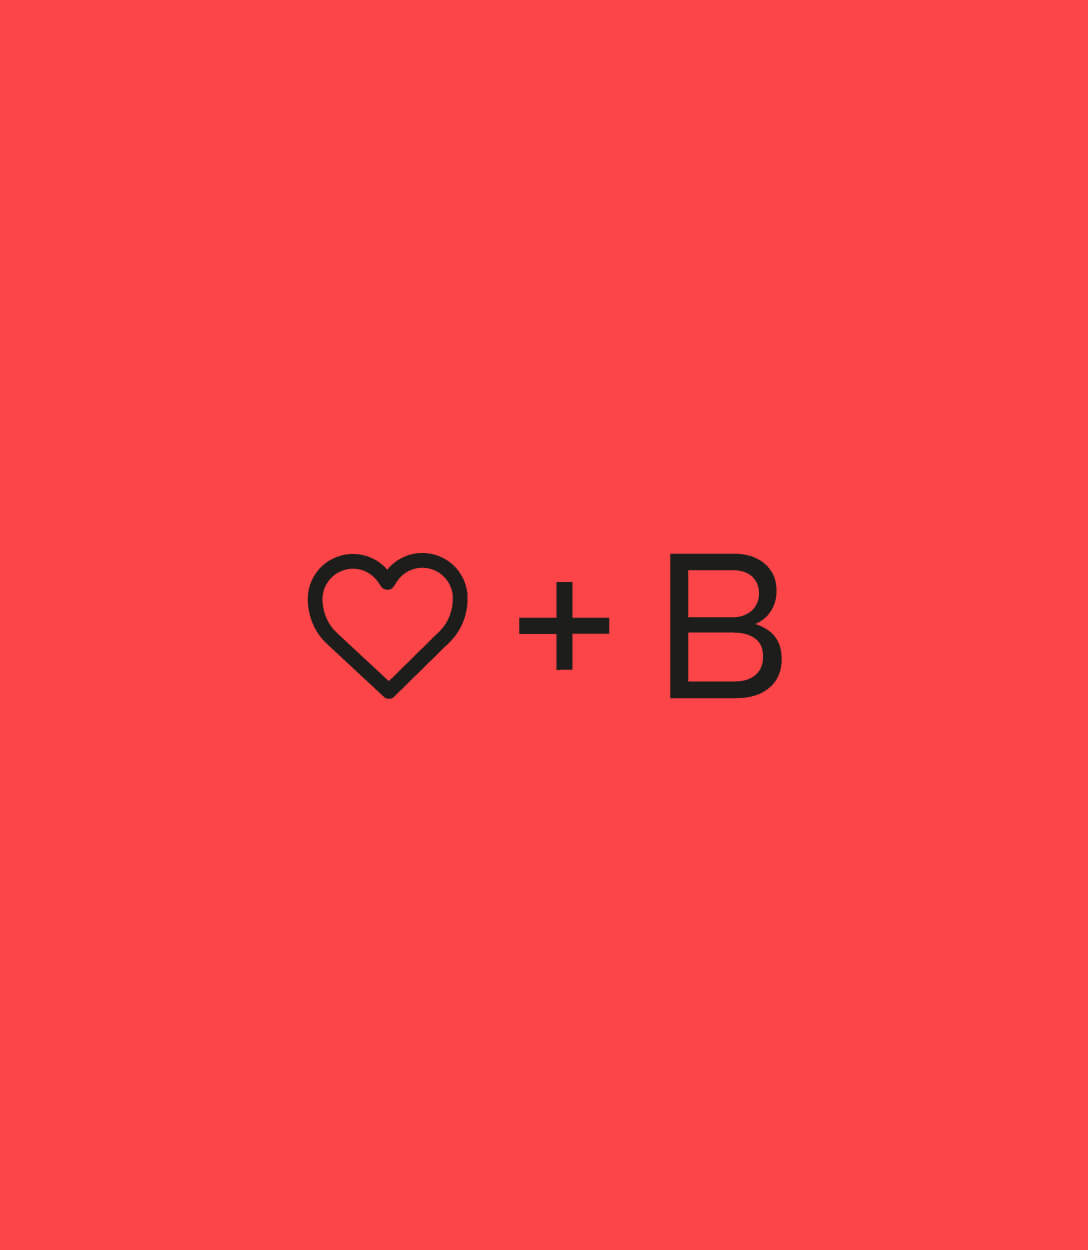 Cartel que a modo tipográfico se dibuja un corazón, el símbolo más y un B